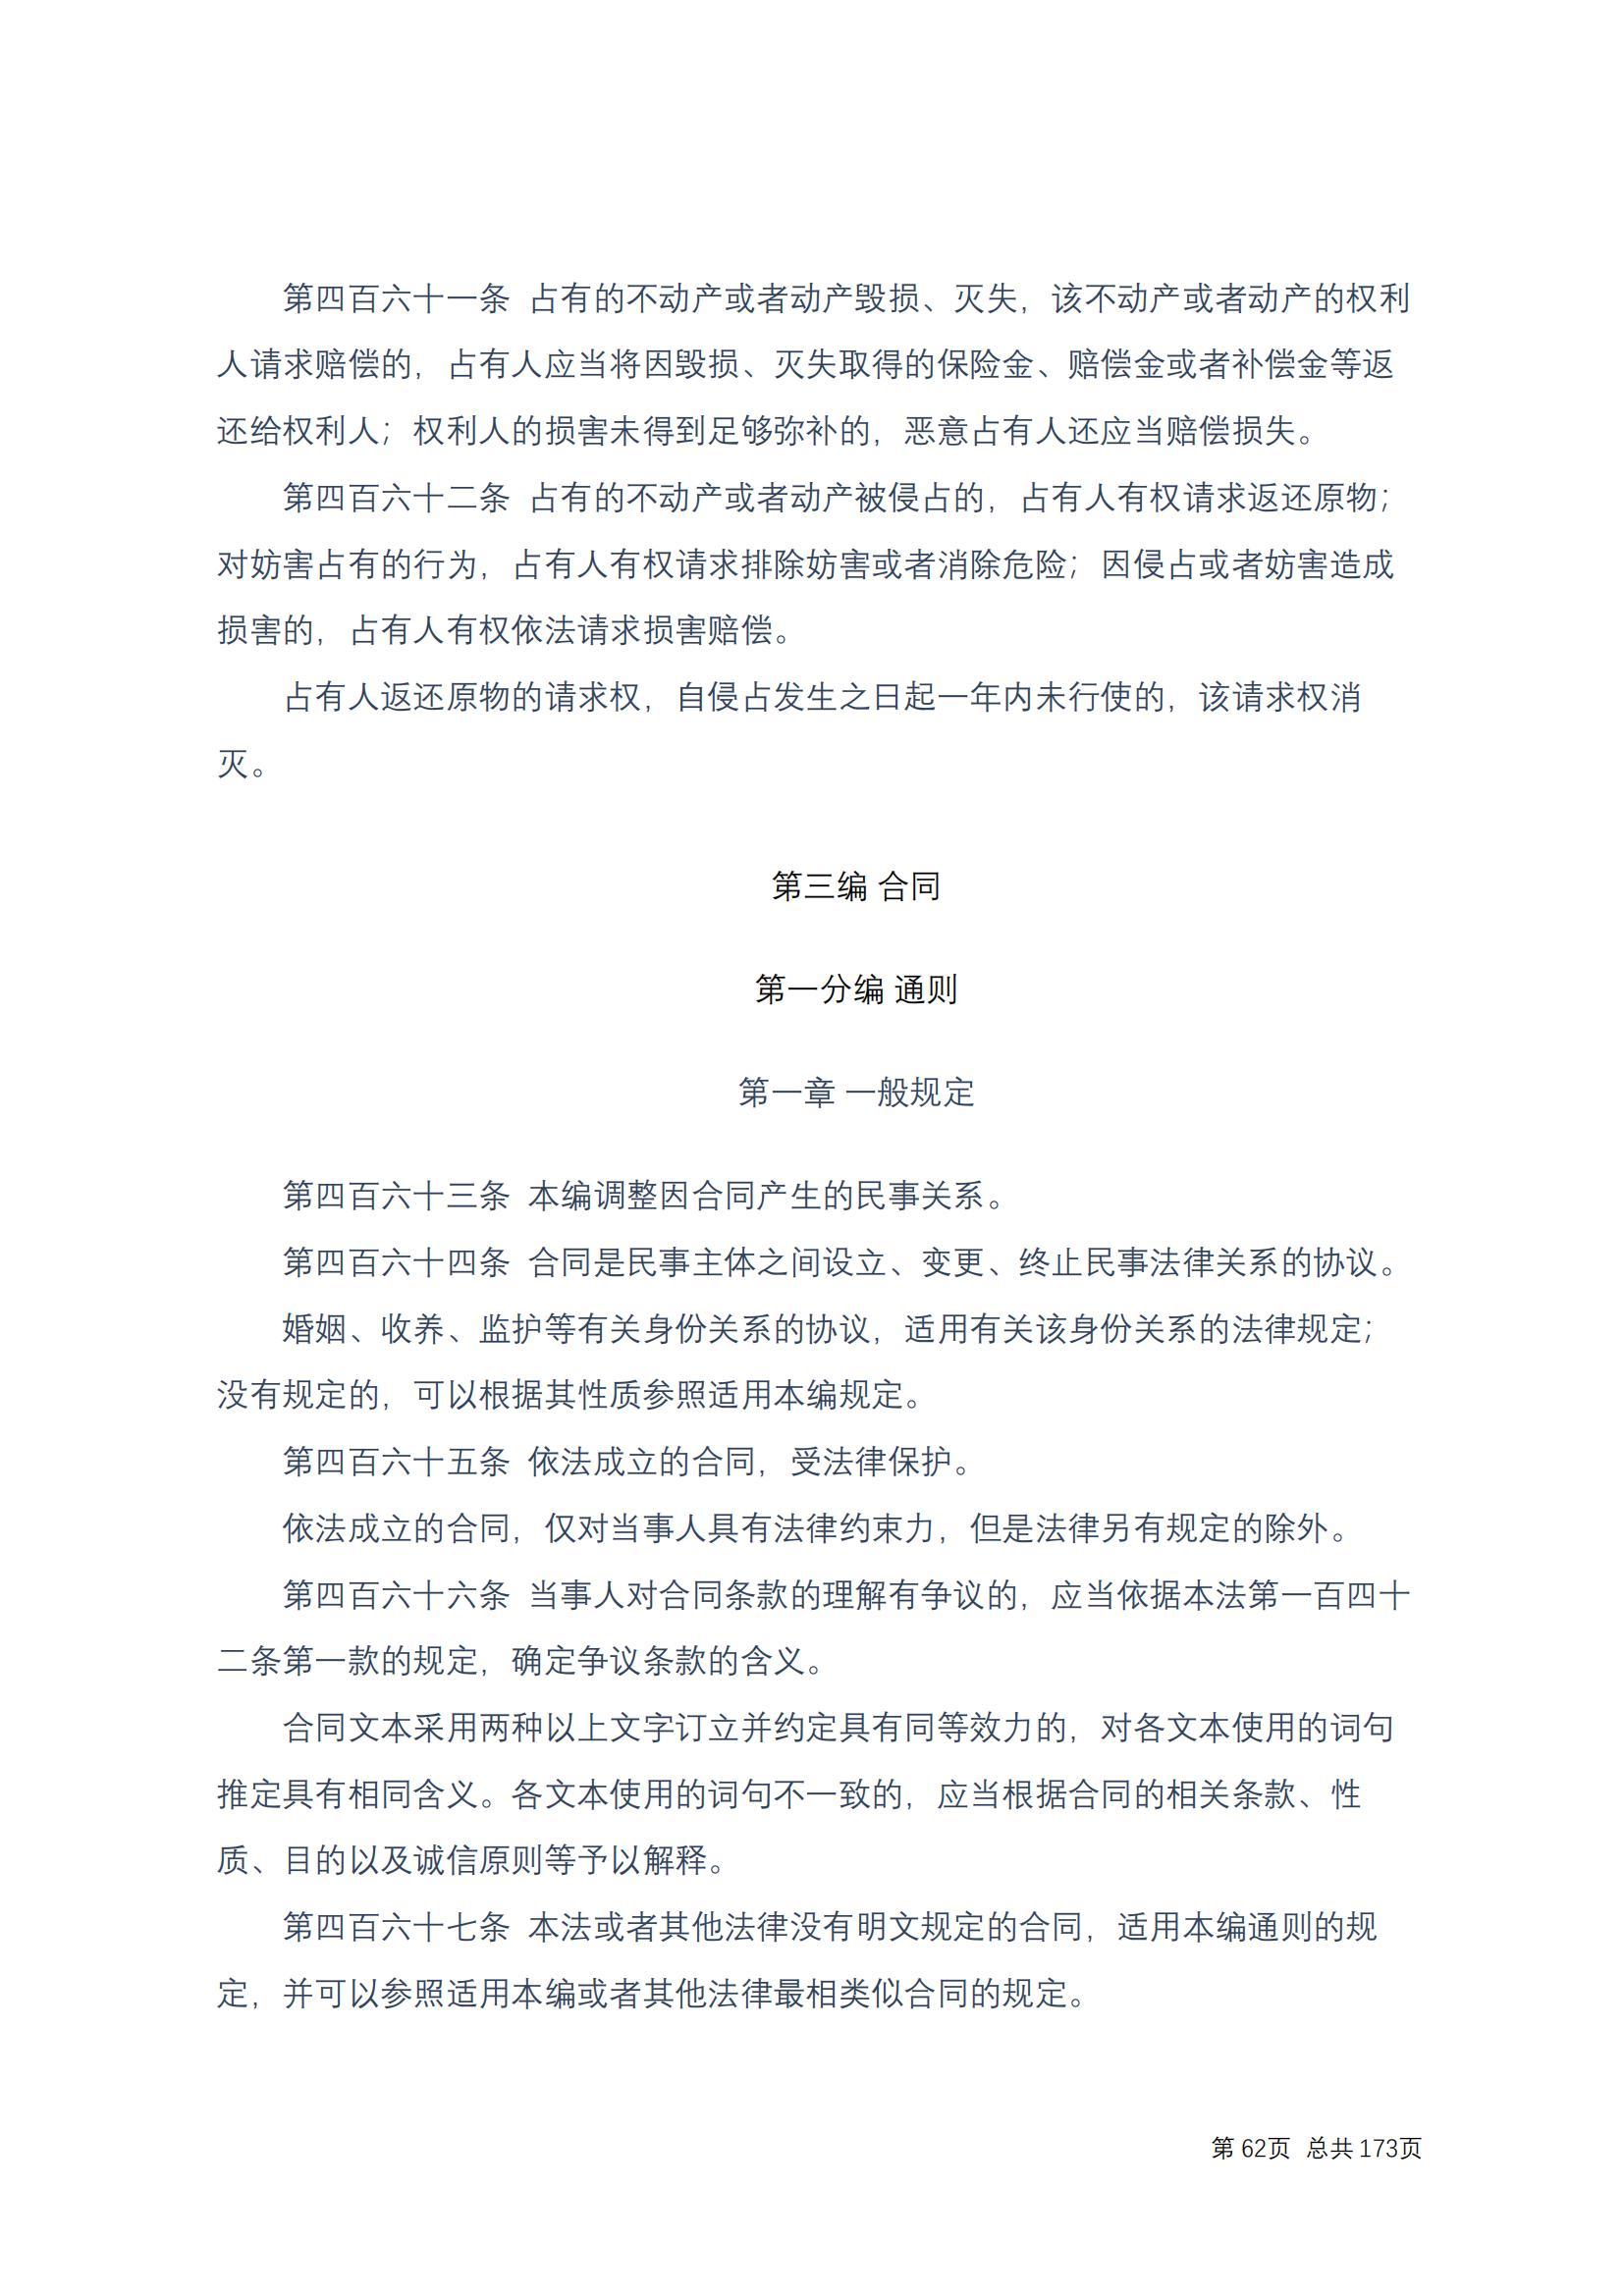 中华人民共和国民法典 修改过_61